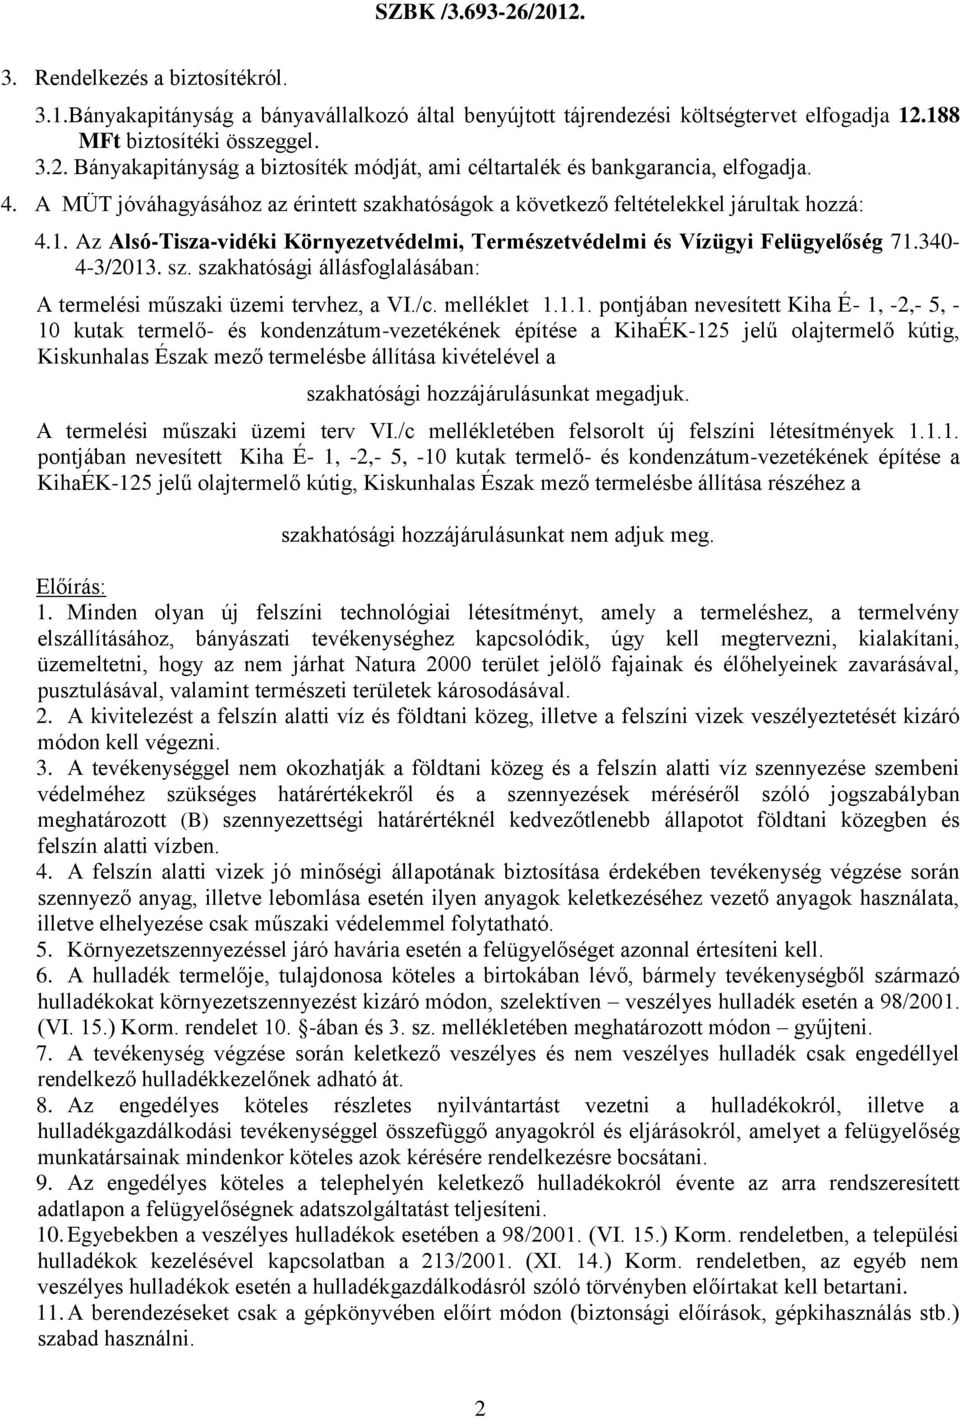 A MÜT jóváhagyásához az érintett szakhatóságok a következő feltételekkel járultak hozzá: 4.1. Az Alsó-Tisza-vidéki Környezetvédelmi, Természetvédelmi és Vízügyi Felügyelőség 71.340-4-3/2013. sz. szakhatósági állásfoglalásában: A termelési műszaki üzemi tervhez, a VI.